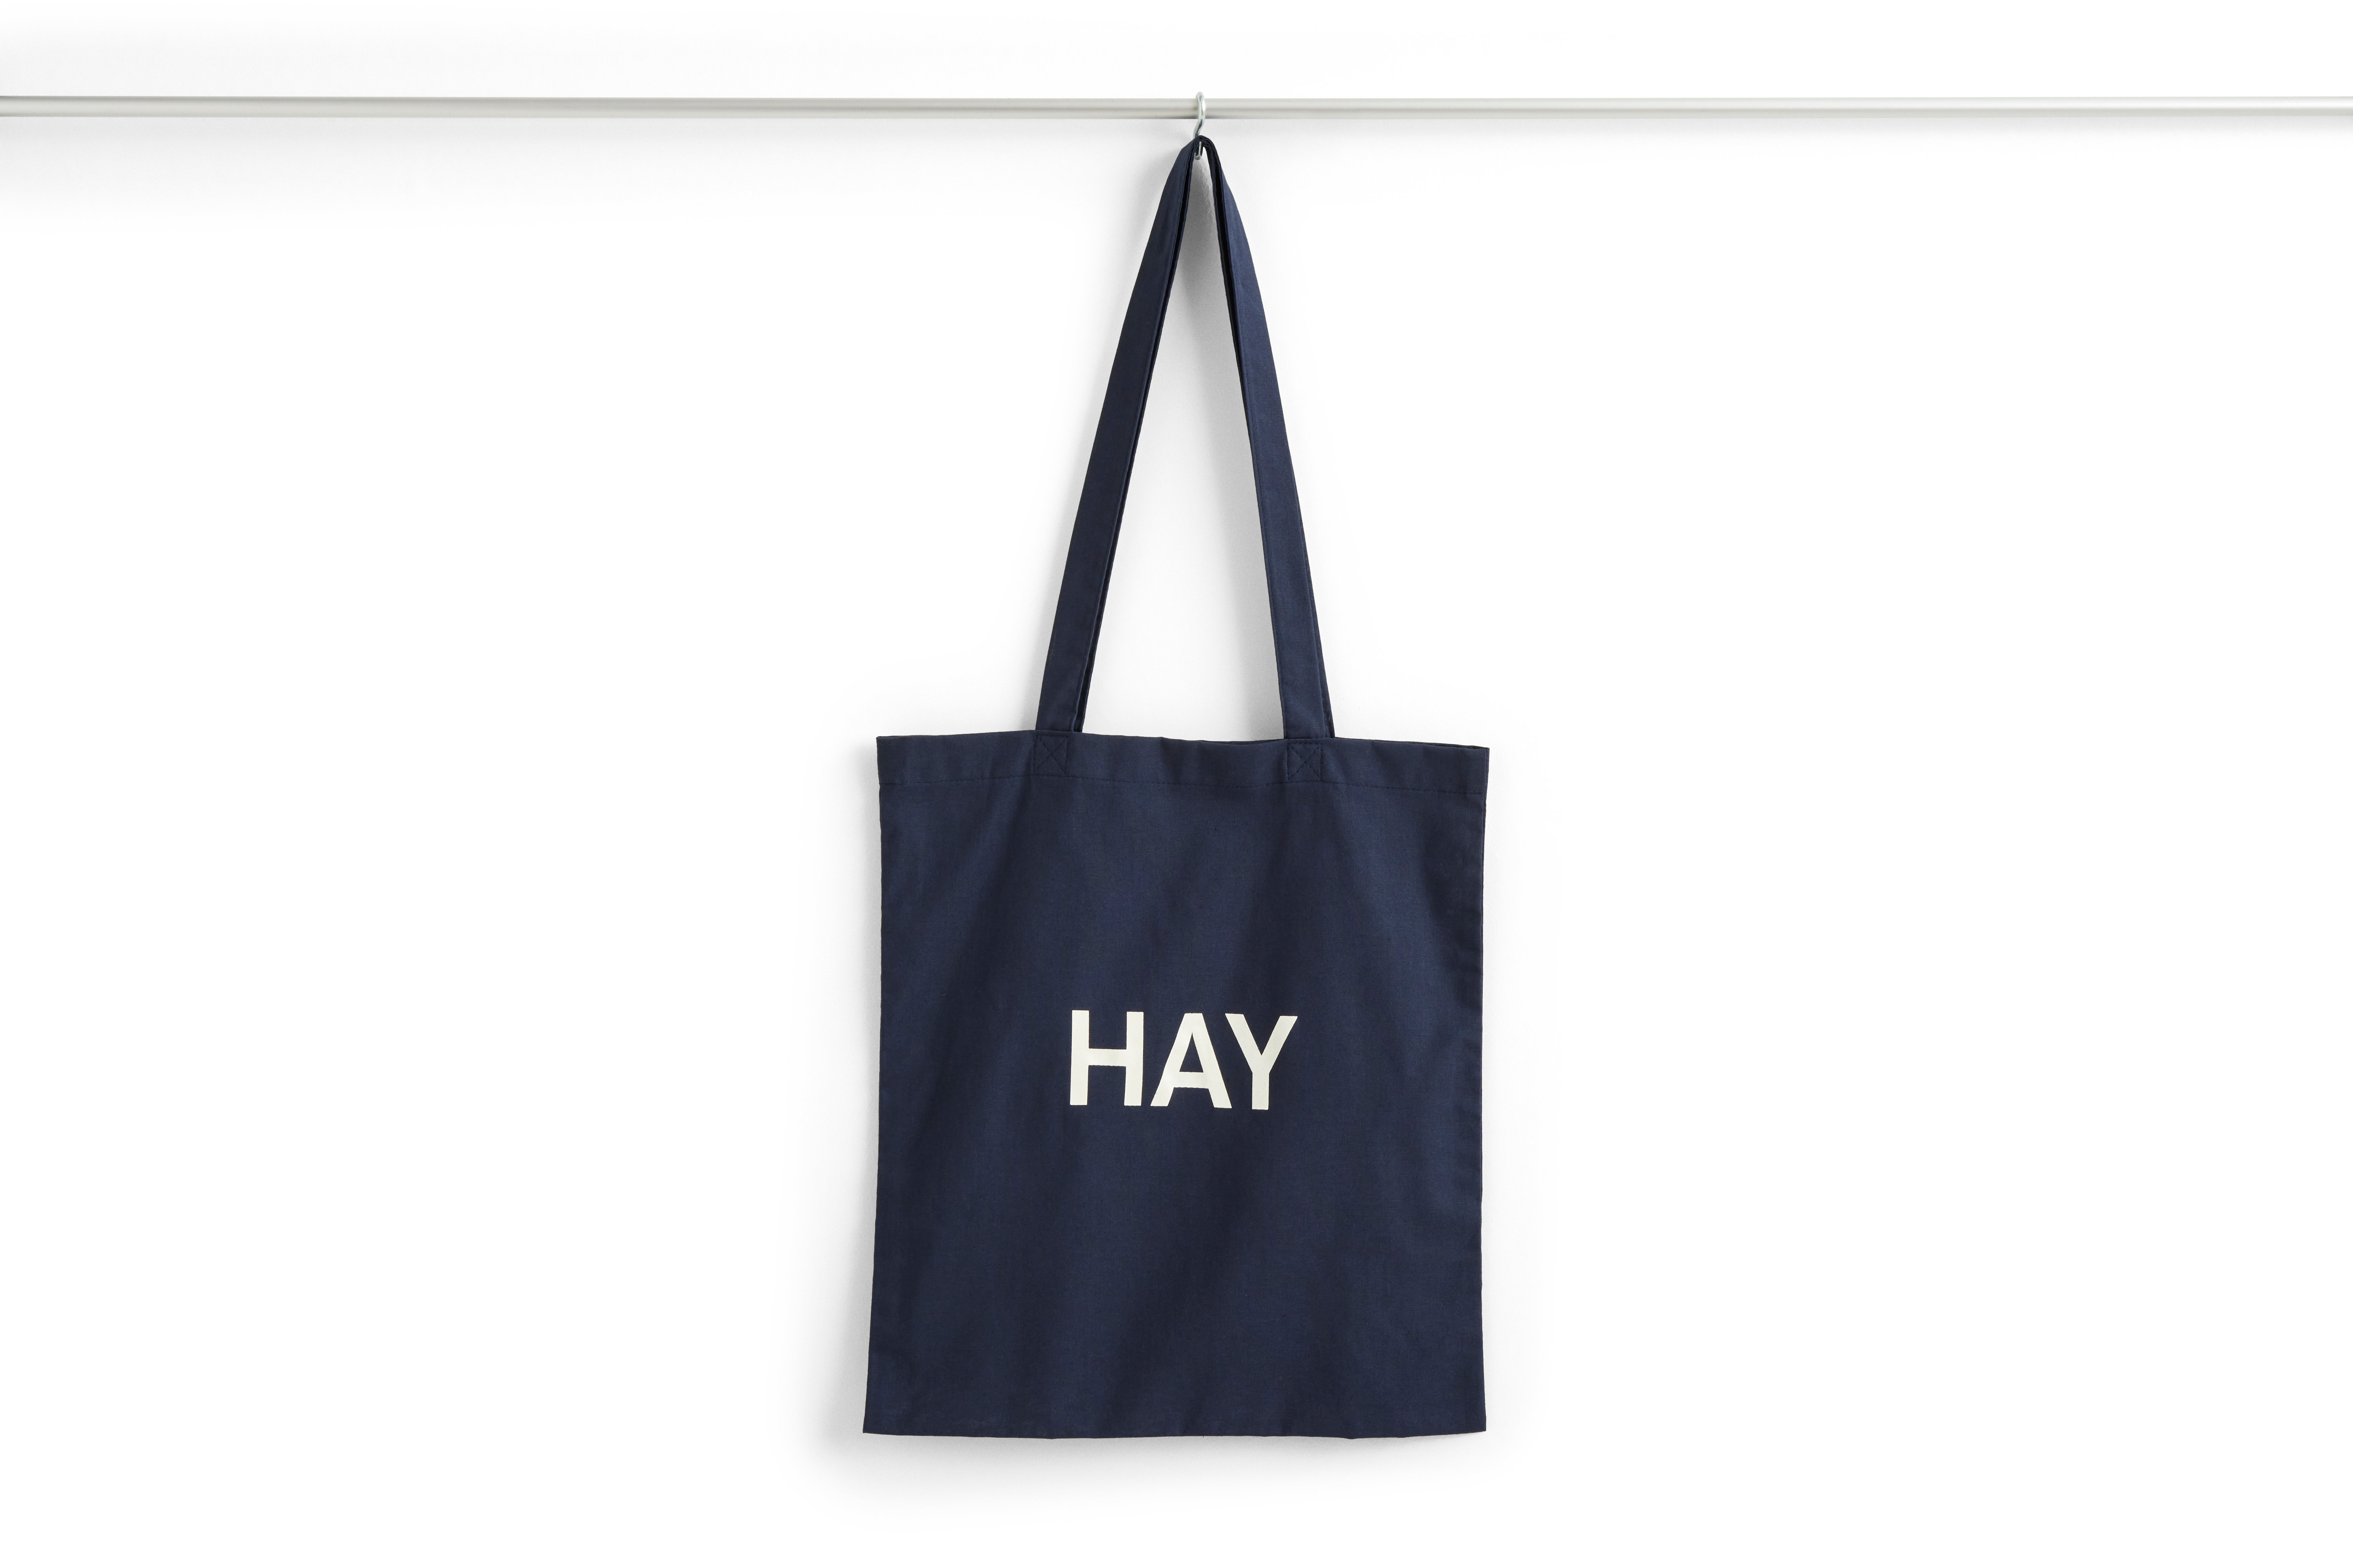 HAY - Tote Bag Taske - Mørkeblå